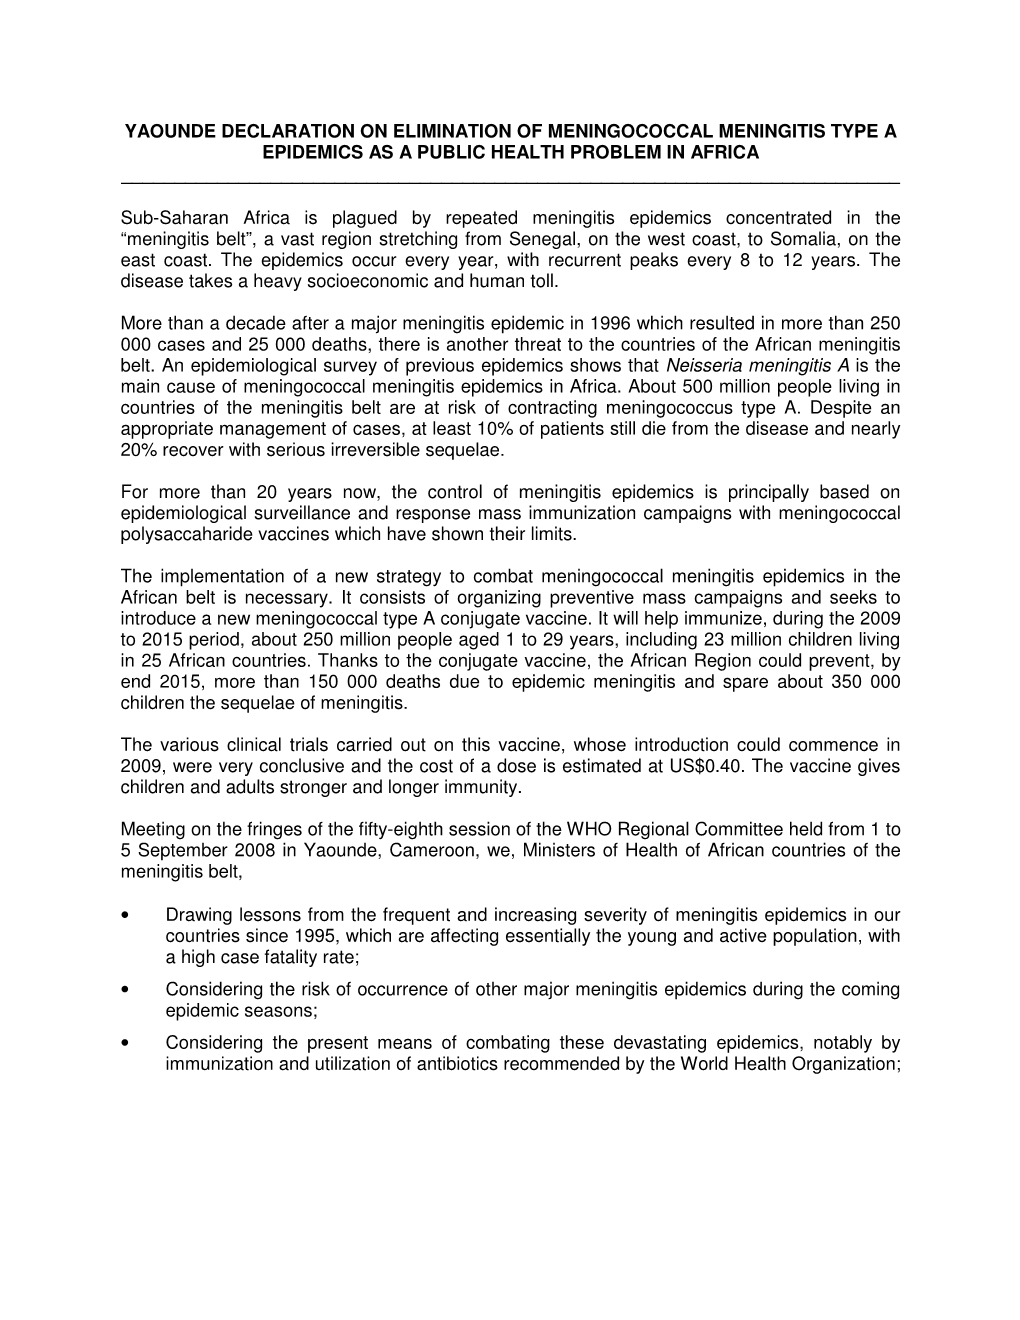 Yaoundé Declaration